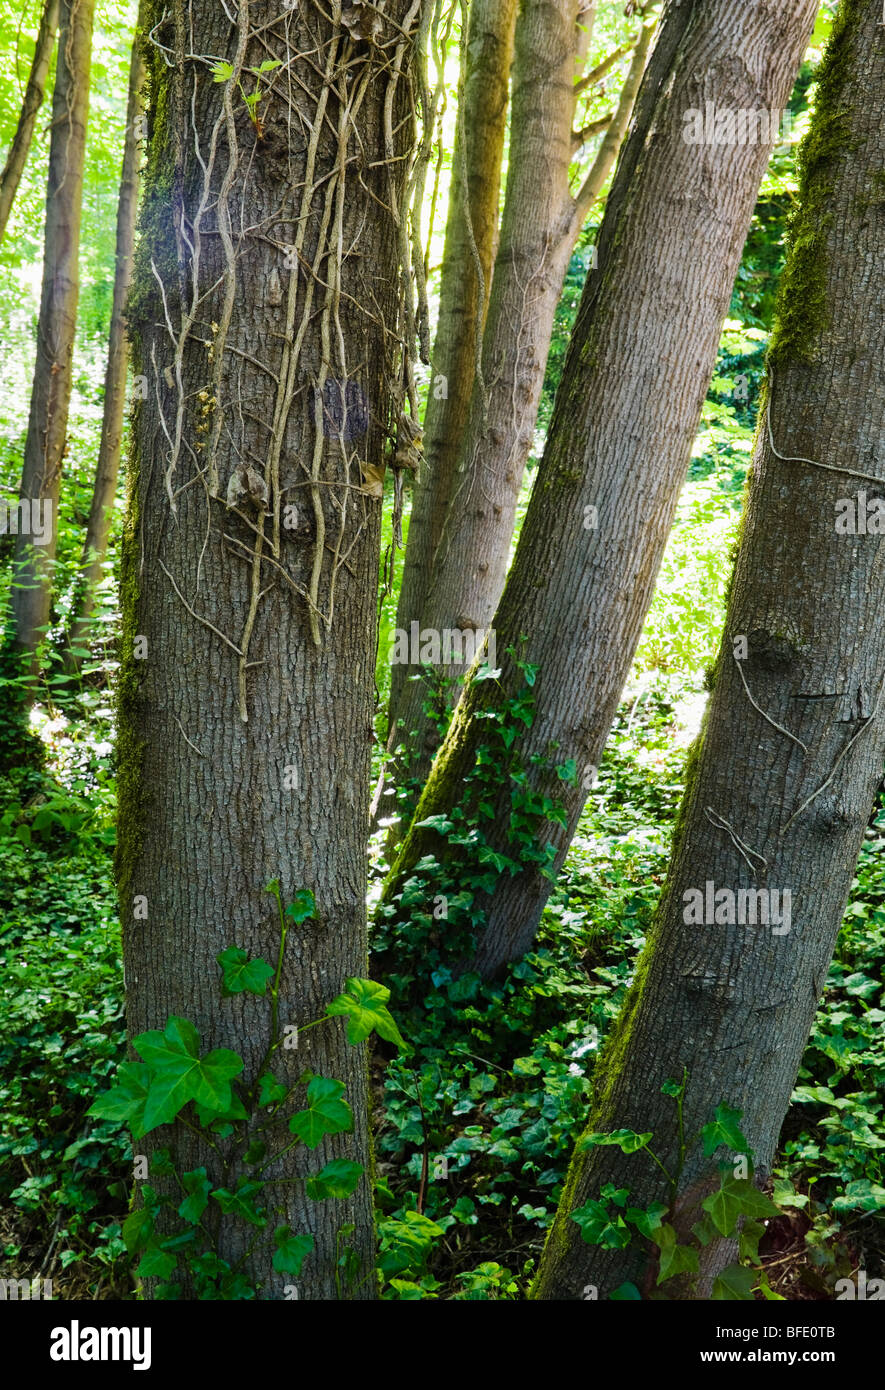 Les efforts de conservation couper le lierre envahissant le tuer sur les arbres alors que les nouveaux ivy commence à augmenter à partir du sol de la forêt. Banque D'Images